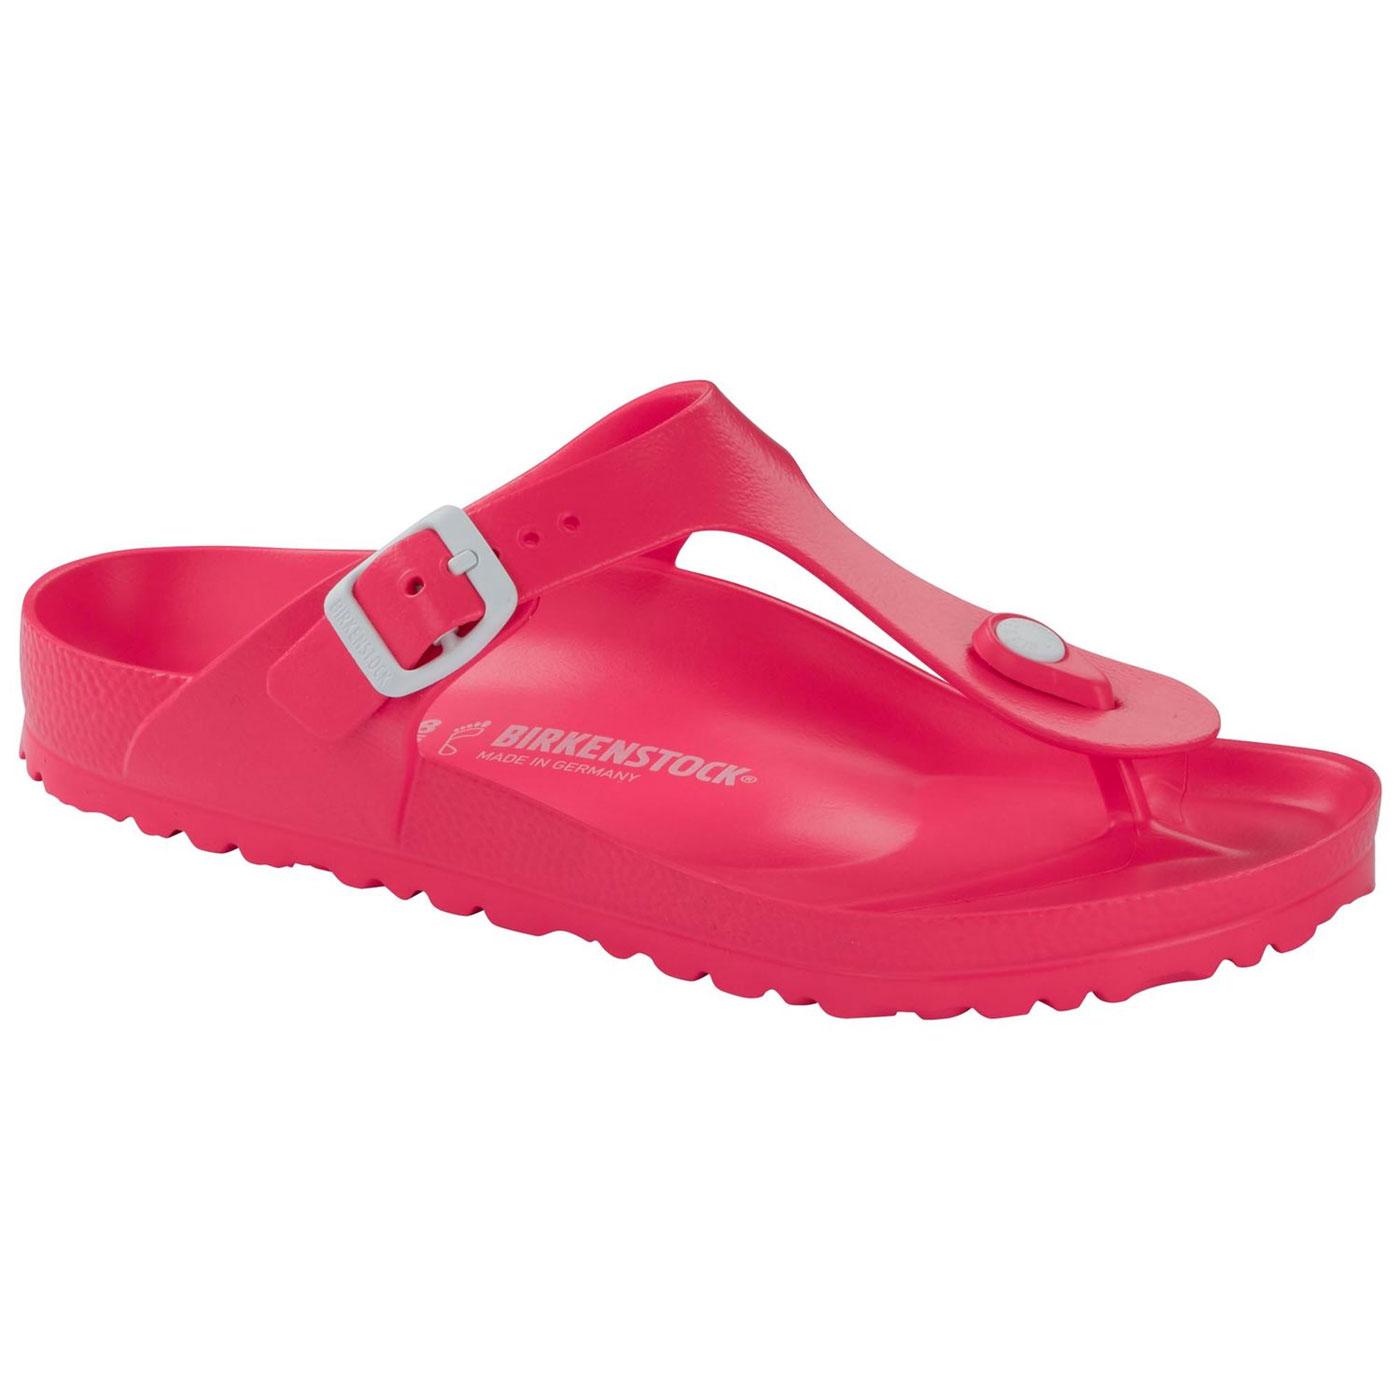 birkenstock waterproof sandals